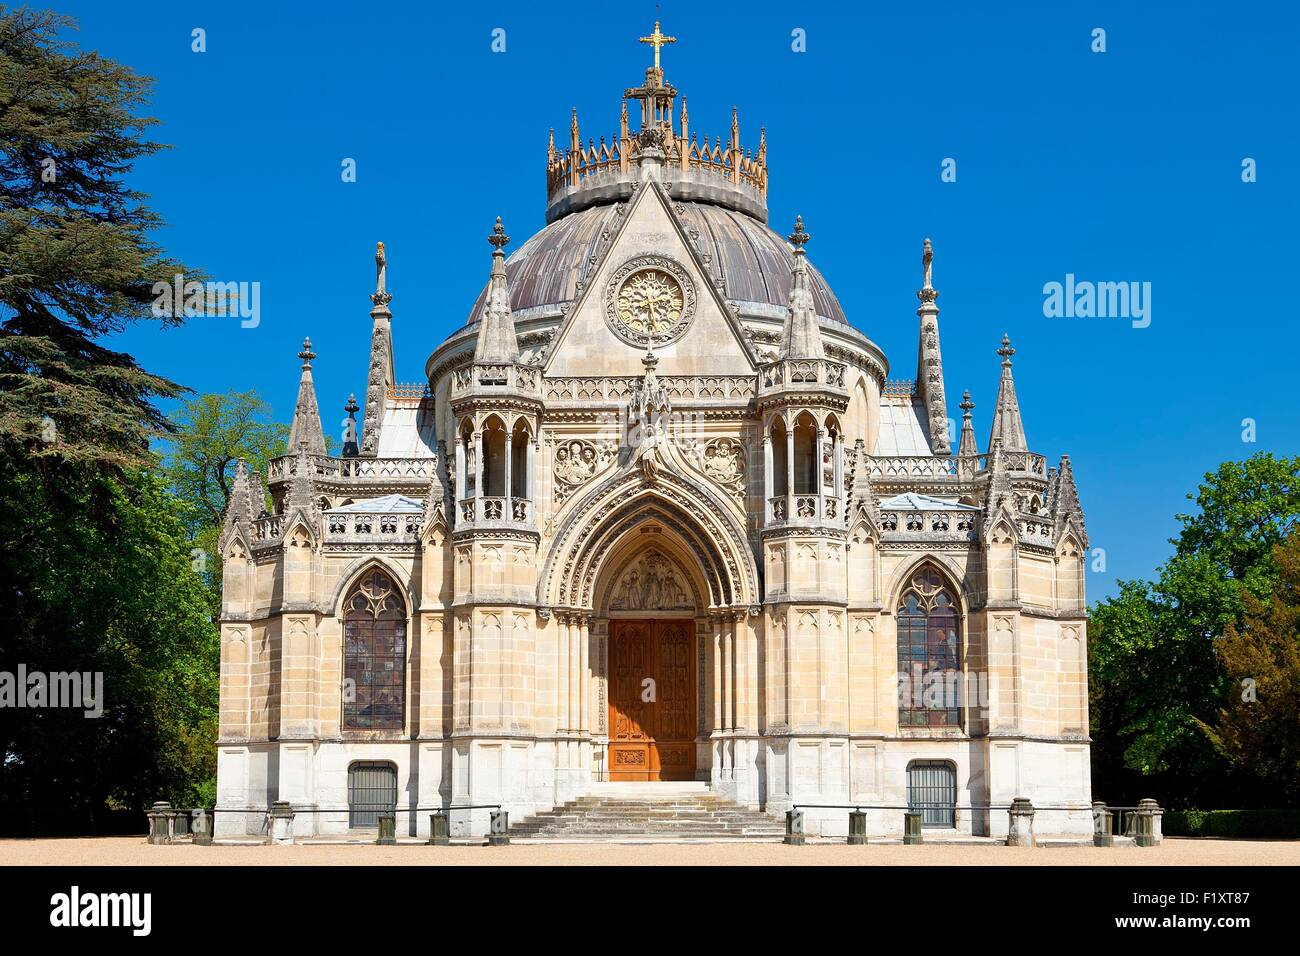 France, Eure et Loir, Dreux, RoyaL chapel of Saint Louis Stock Photo